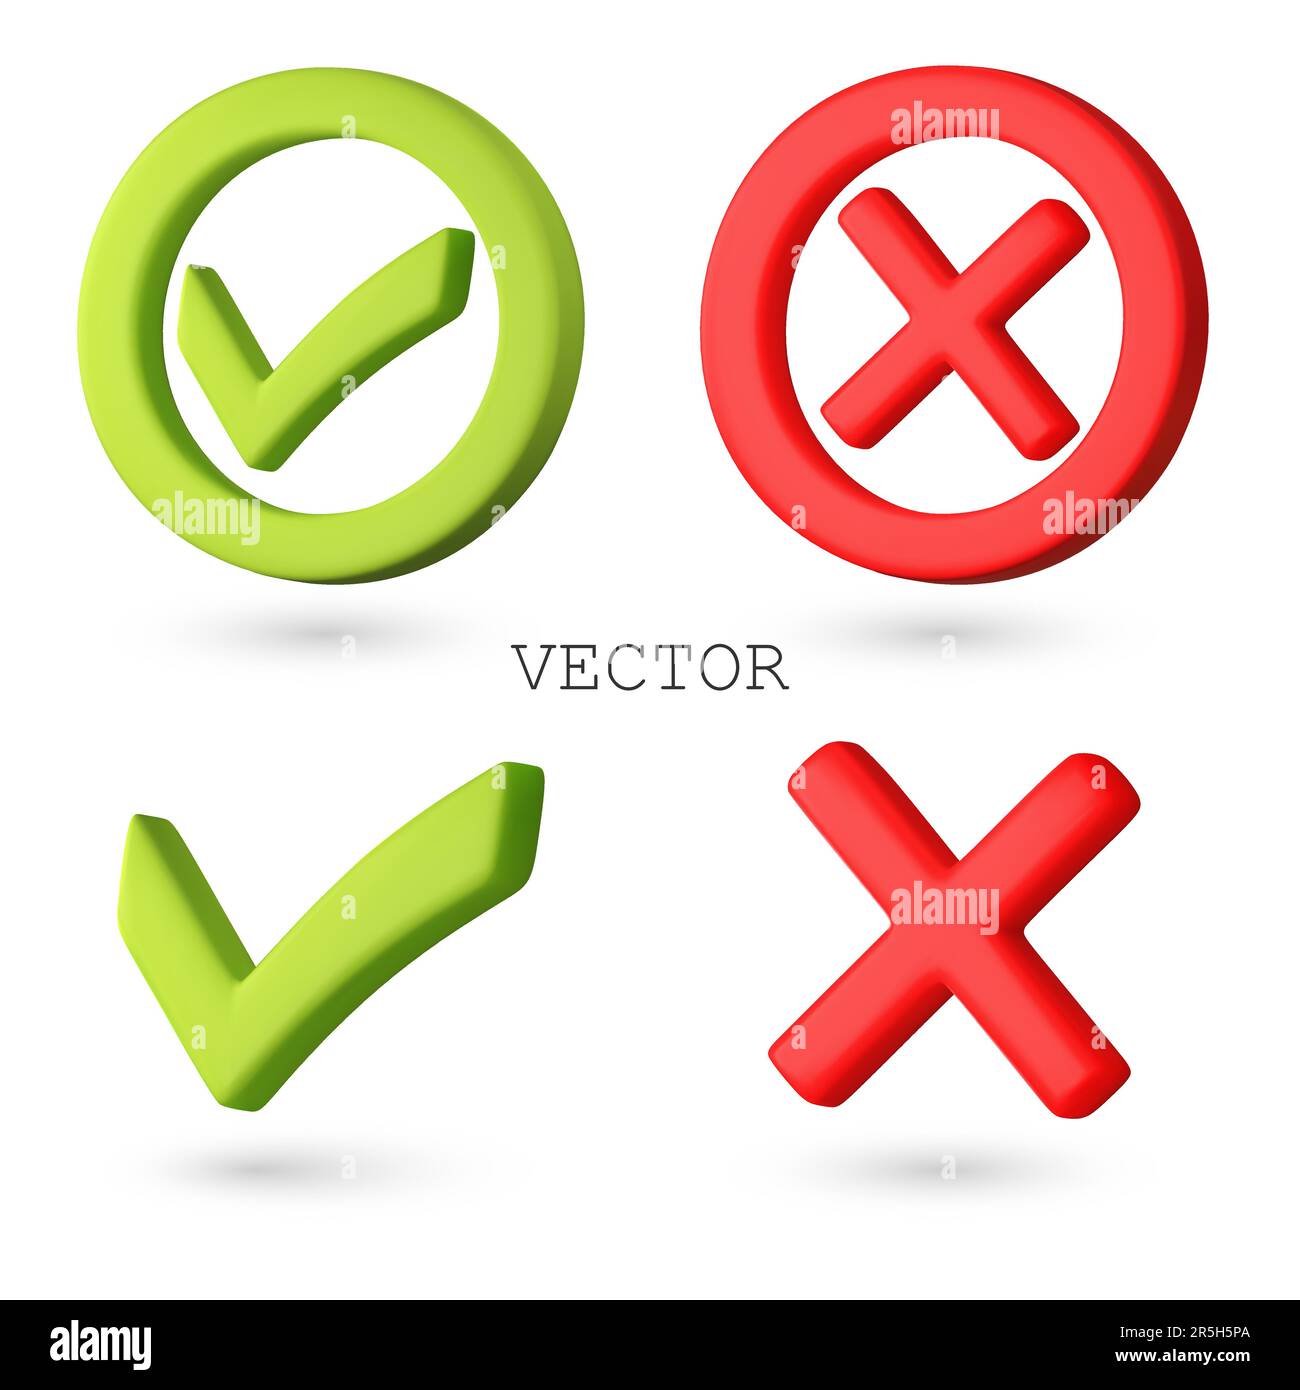 Icônes Vector 3D avec coche verte et croix rouge. Boutons de confirmation et de rejet. Illustration vectorielle de 3D icônes réalistes à droite et à droite. Isoler Illustration de Vecteur